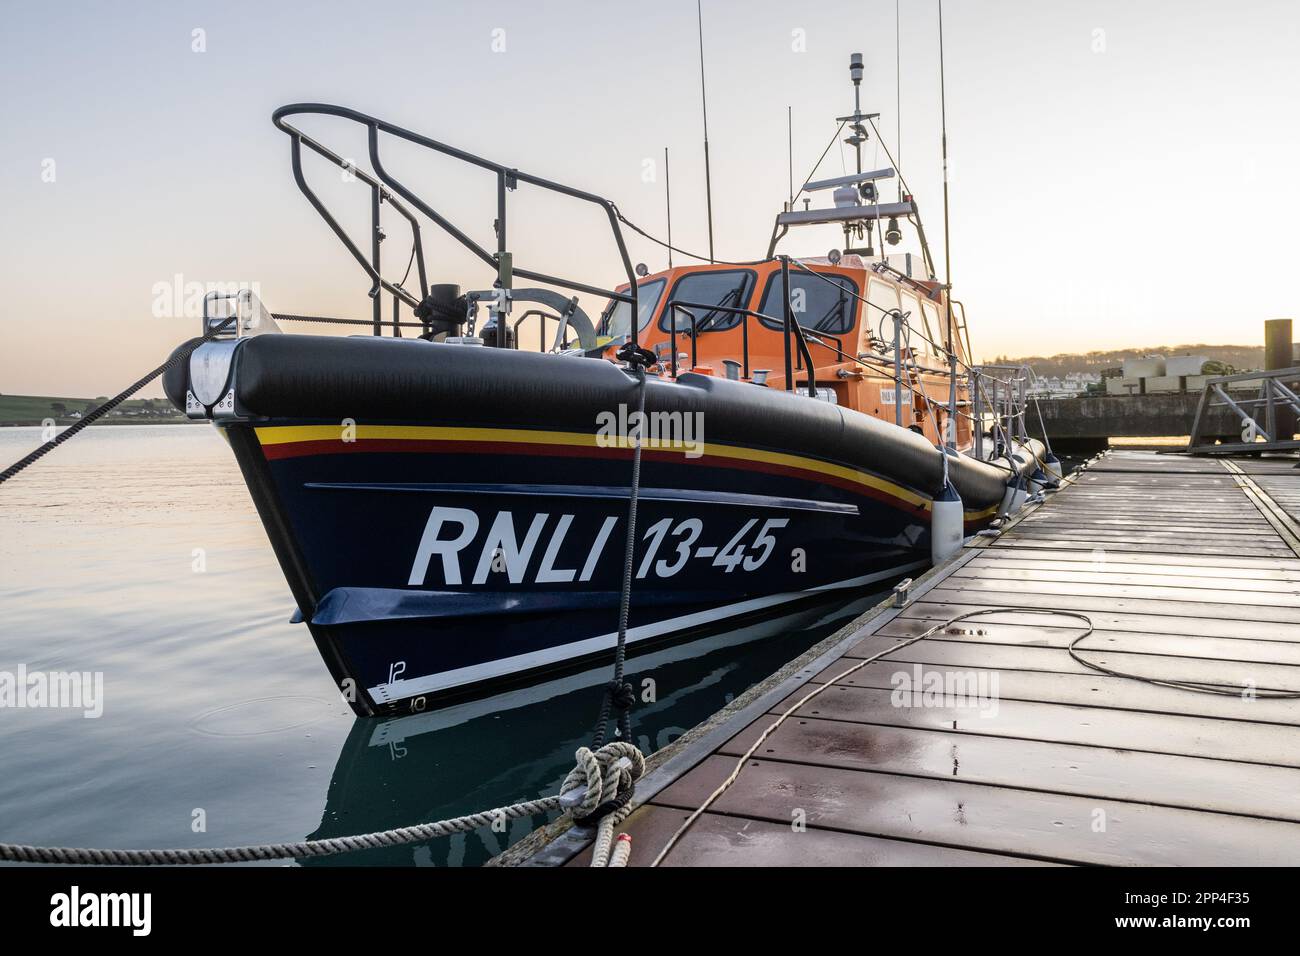 RNLI Lifeboat Val Adnams 13-45 amarré à Courtmacsherry, West Cork, Irlande. Banque D'Images